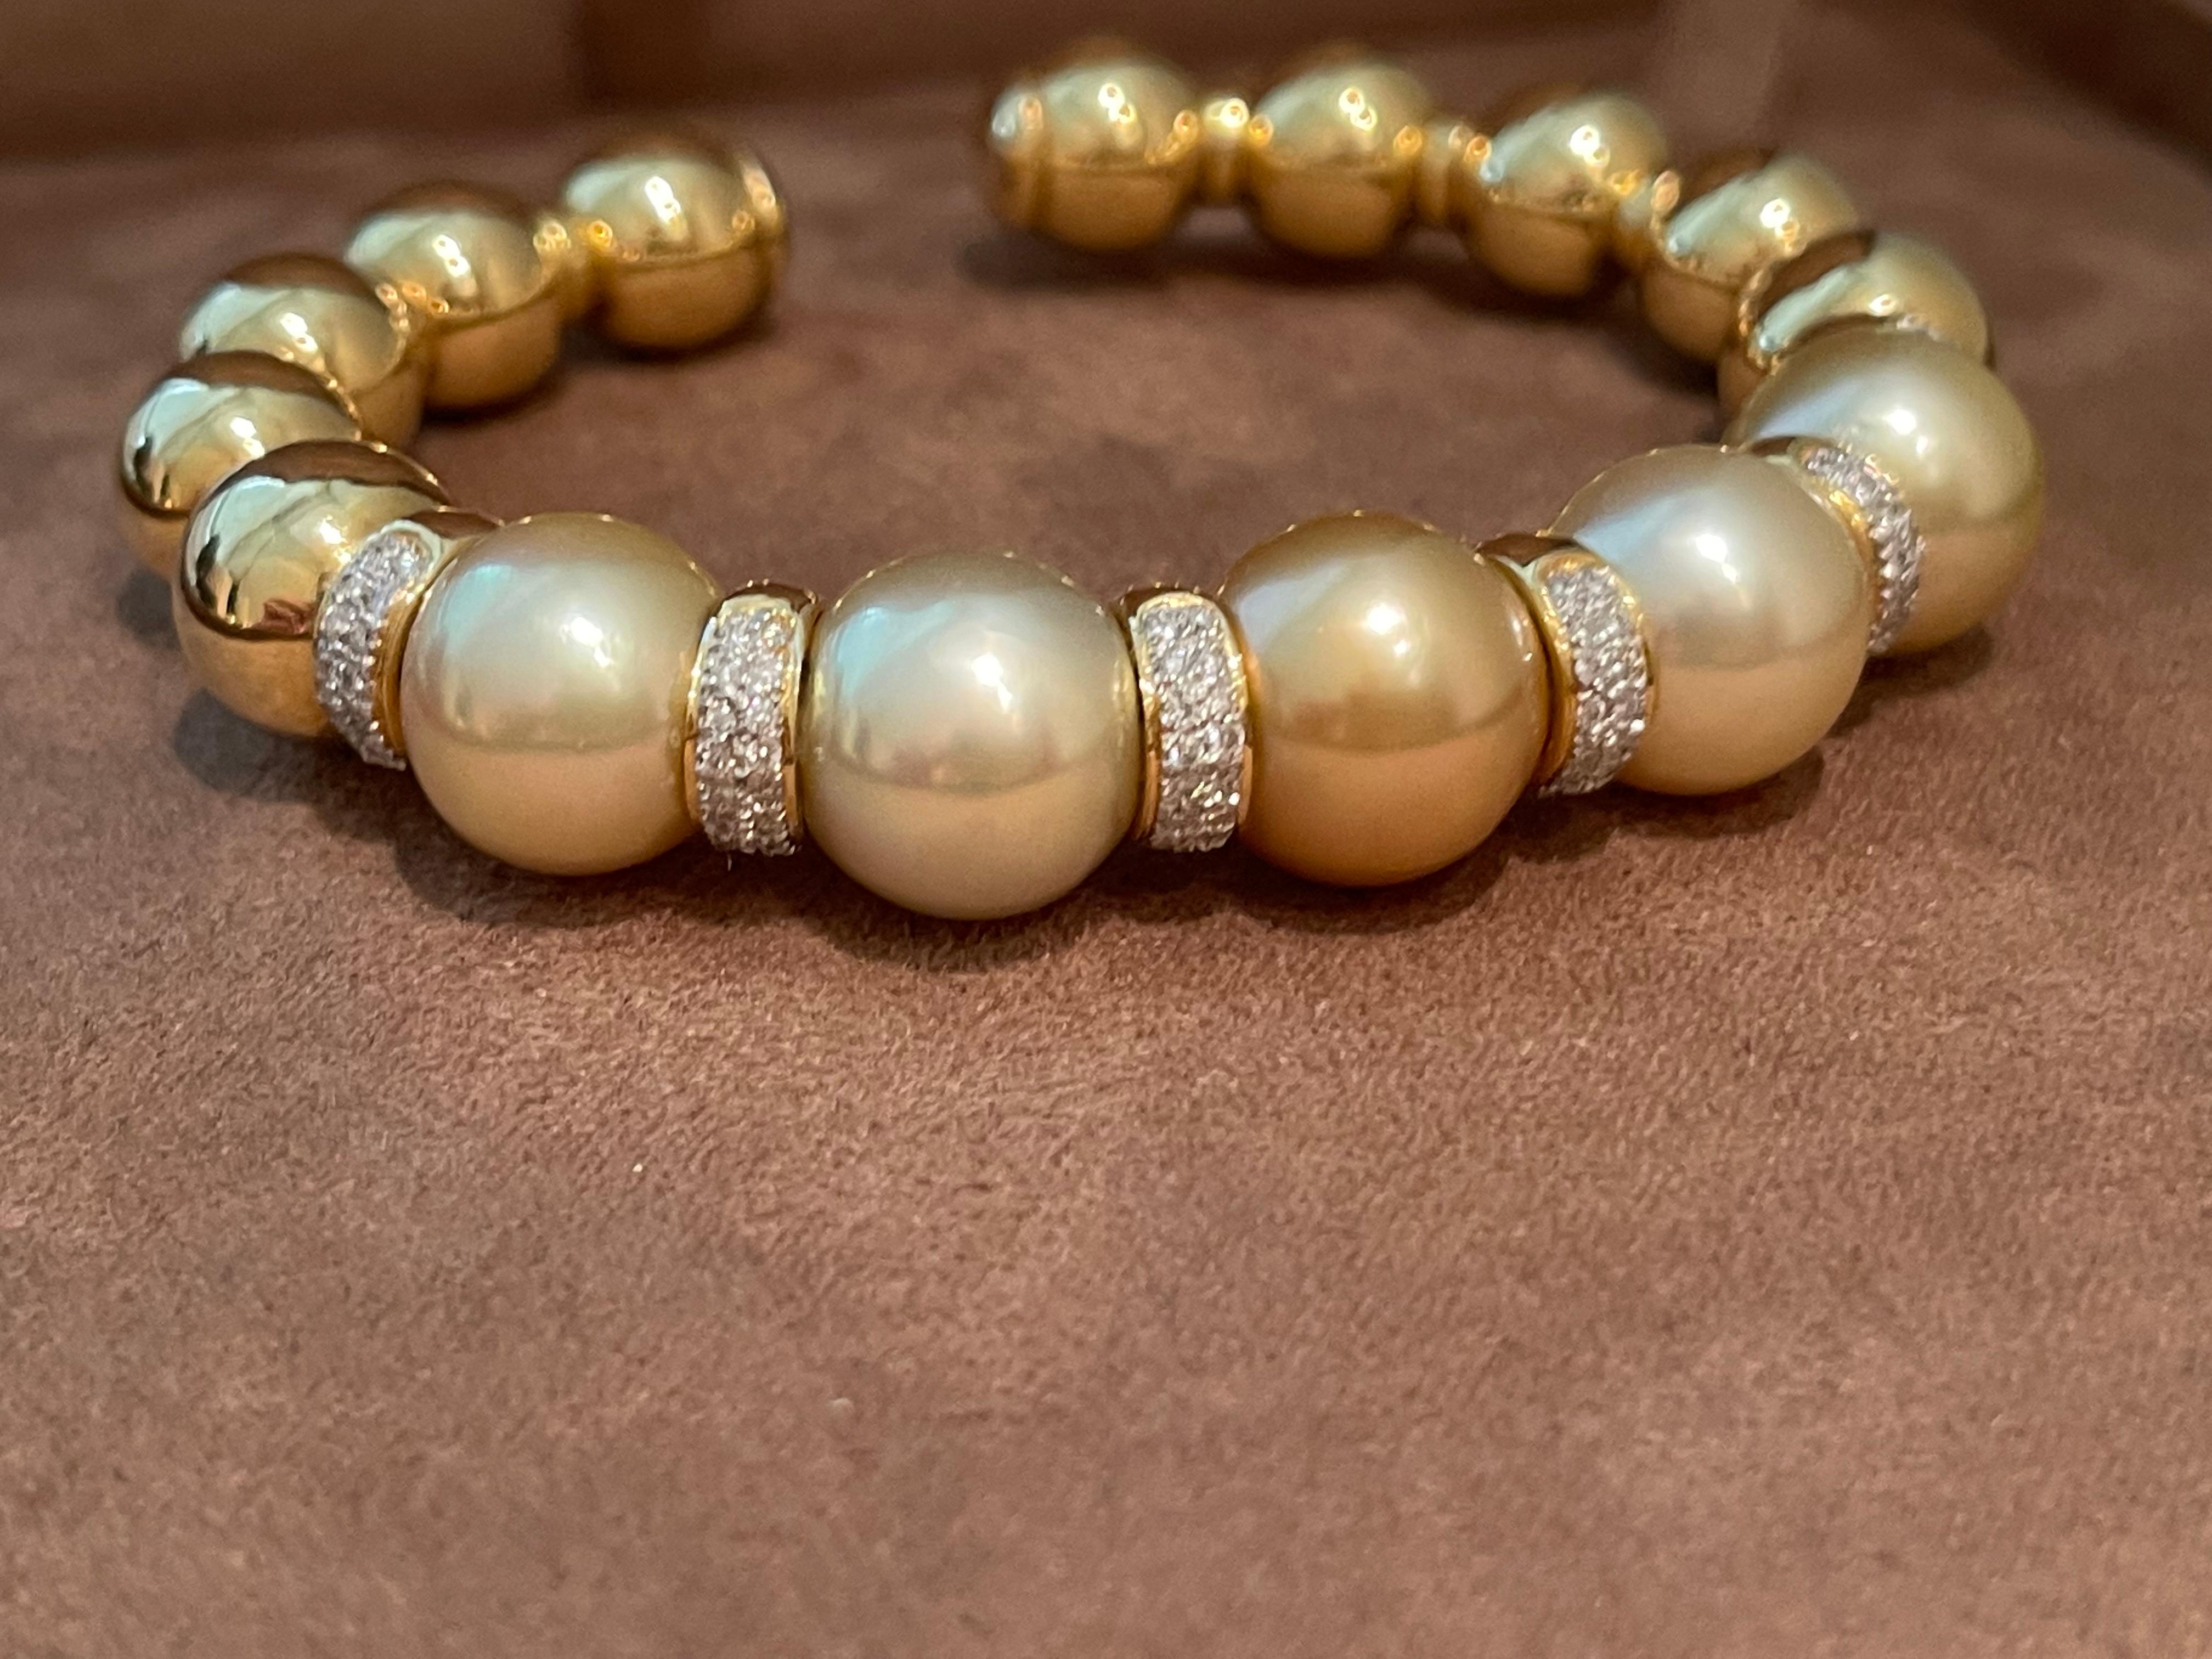 Cet élégant bracelet est serti de 5 perles dorées des mers du Sud, rehaussées de rondelles de diamant ; il est serti en or jaune 18 carats. Flexible avec dos ouvert. 96 diamants pesant 0,75 ct. Perles des mers du Sud de 12,5 mm à 13 mm. Le bracelet